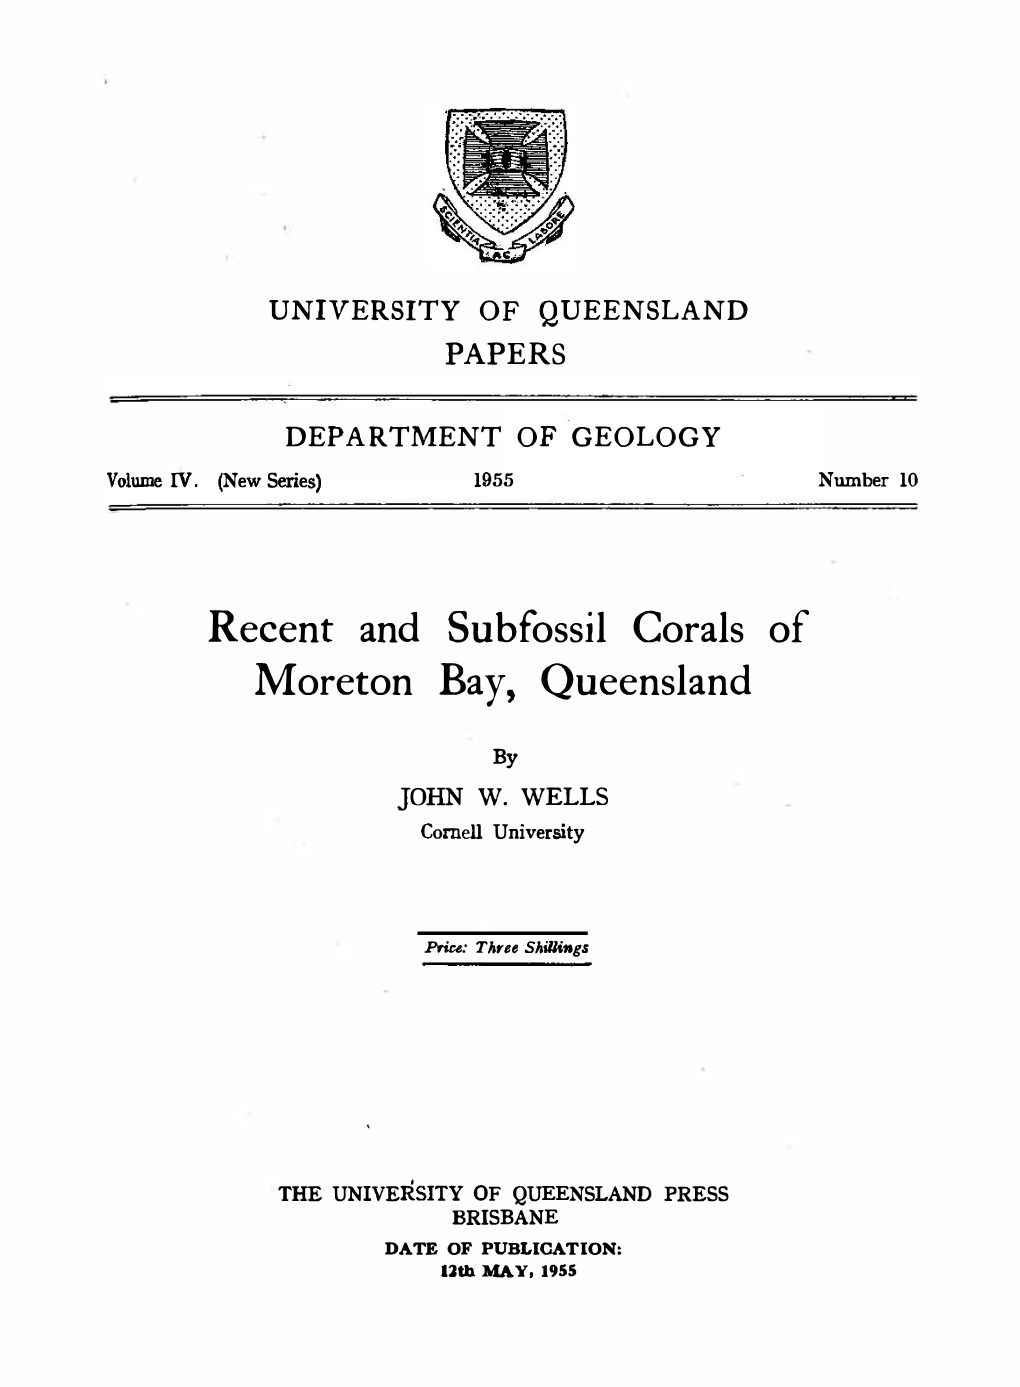 University of Queensland Department of Geology